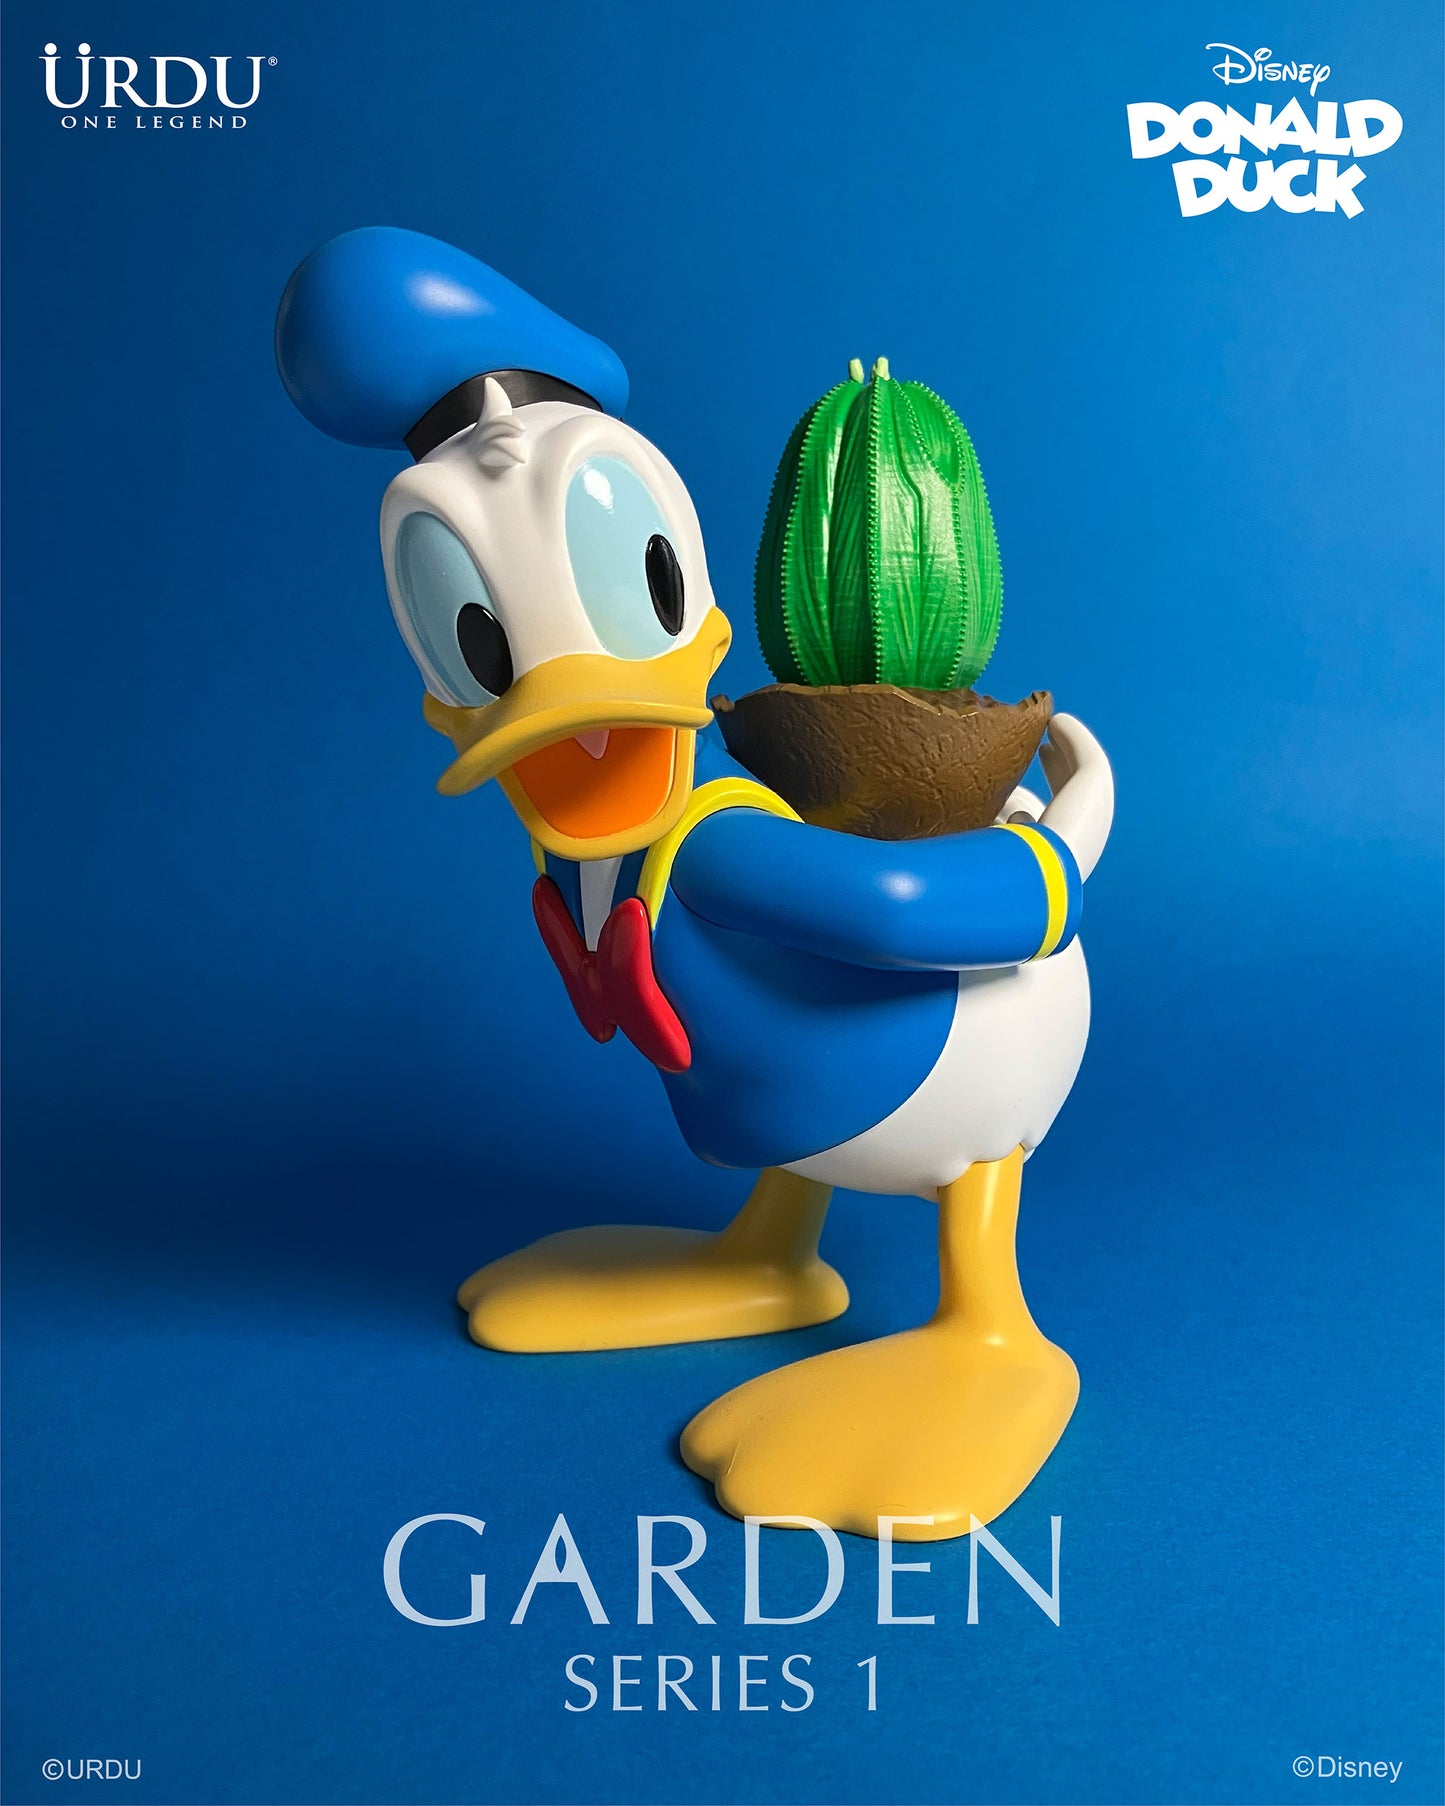 
                  
                    URDU 7 Inch Garden Series 1 - Donald Duck (Color Ver.)
                  
                